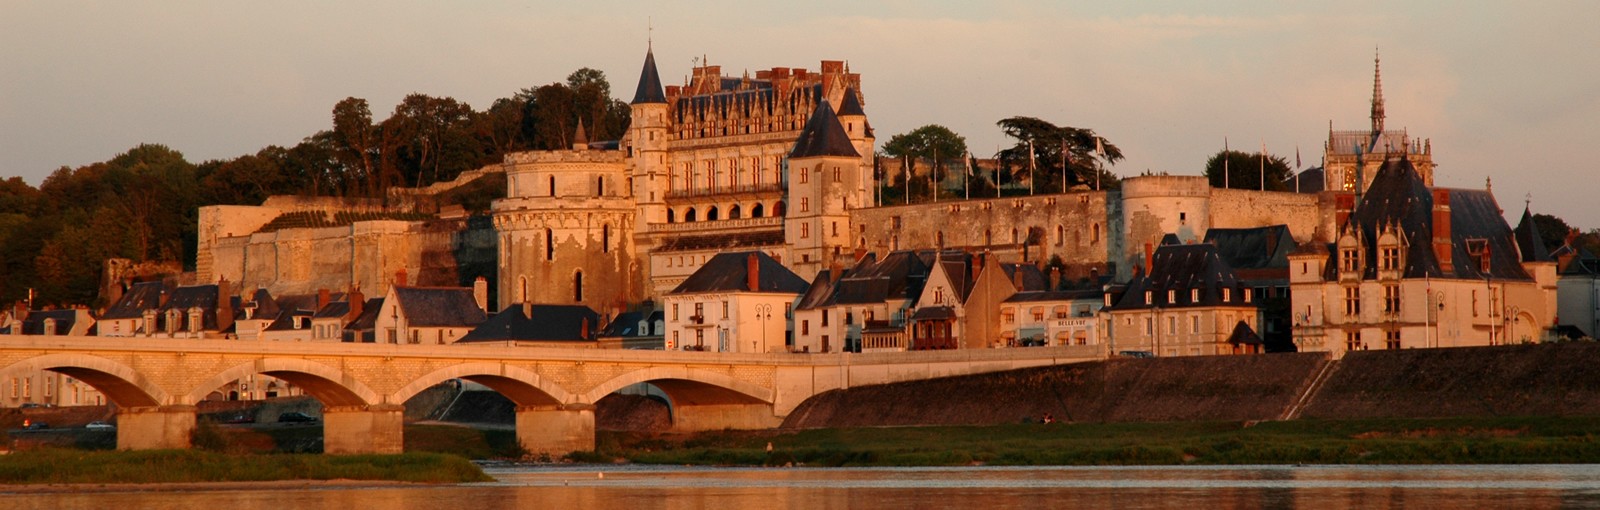 Tours Normandía, Mont-Saint-Michel, Loire, Chartres y Versalles - Multi-régional - Circuitos desde Paris